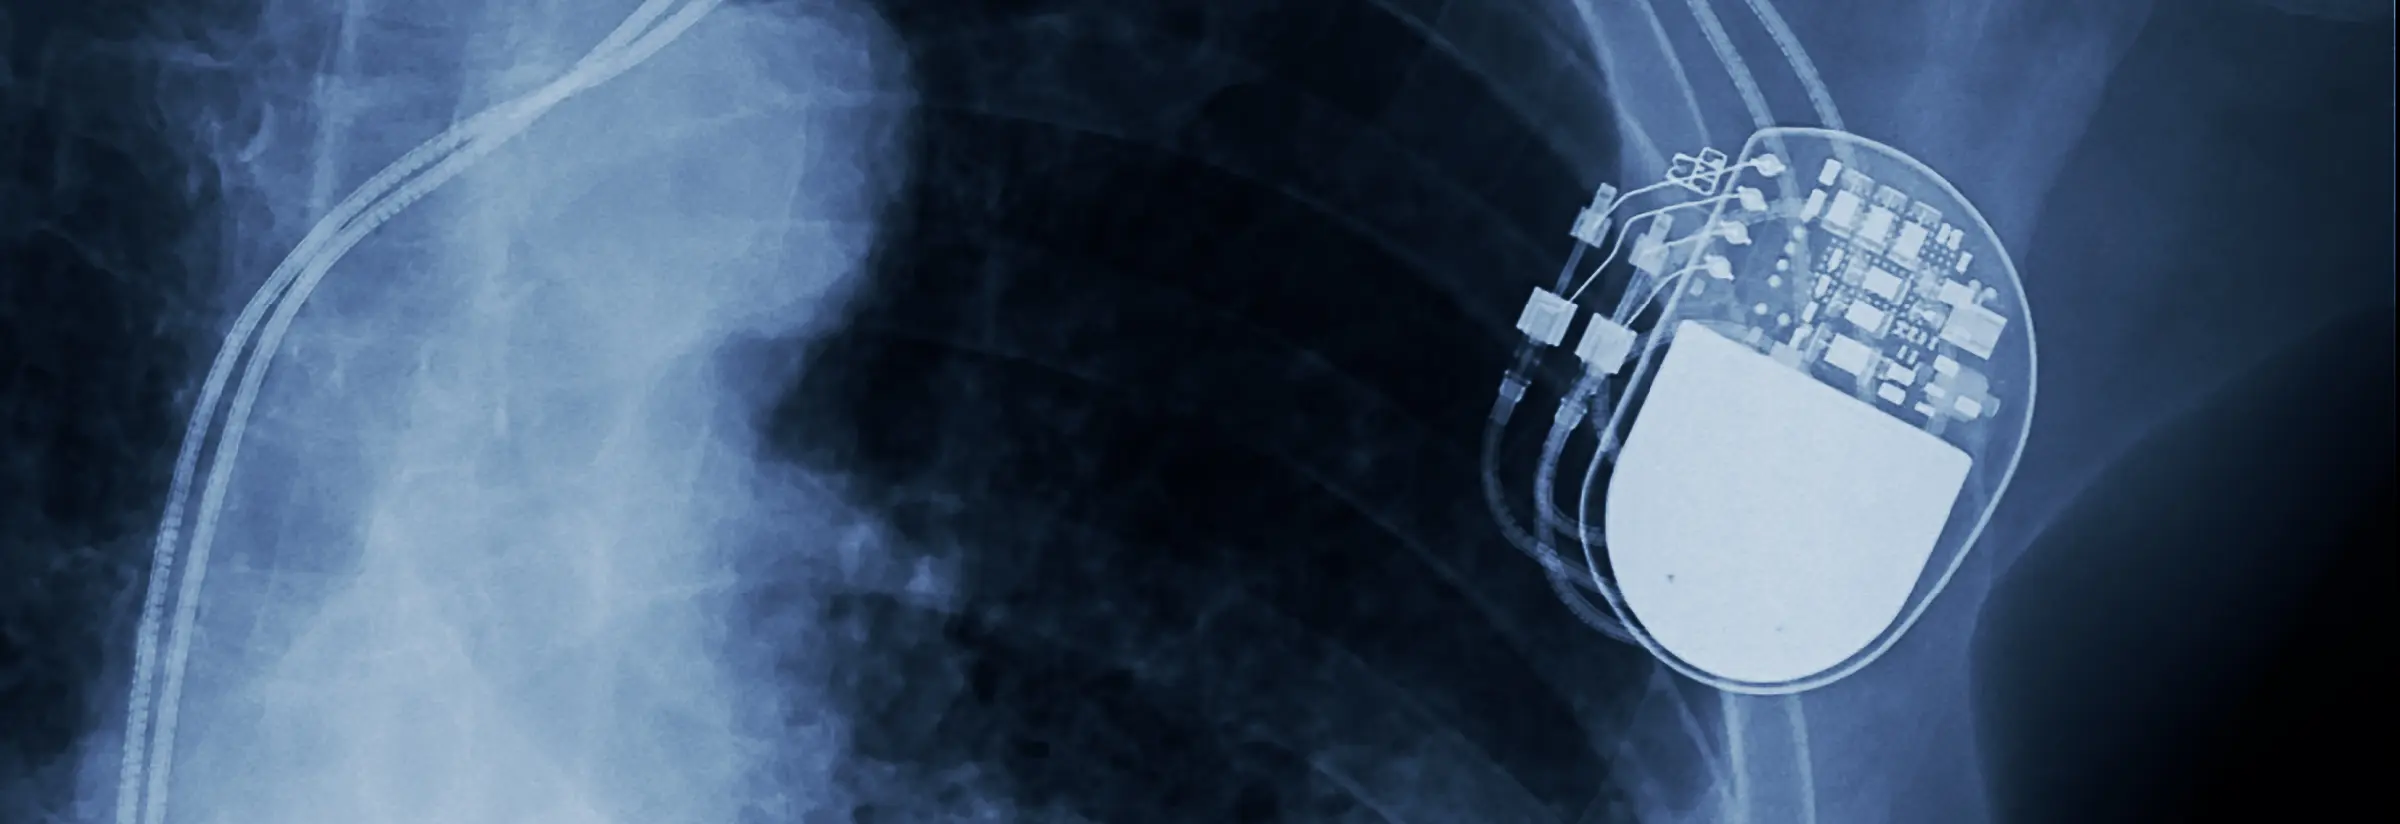 Herzschrittmacher oder Defibrillator - Die Unterschiede kennen